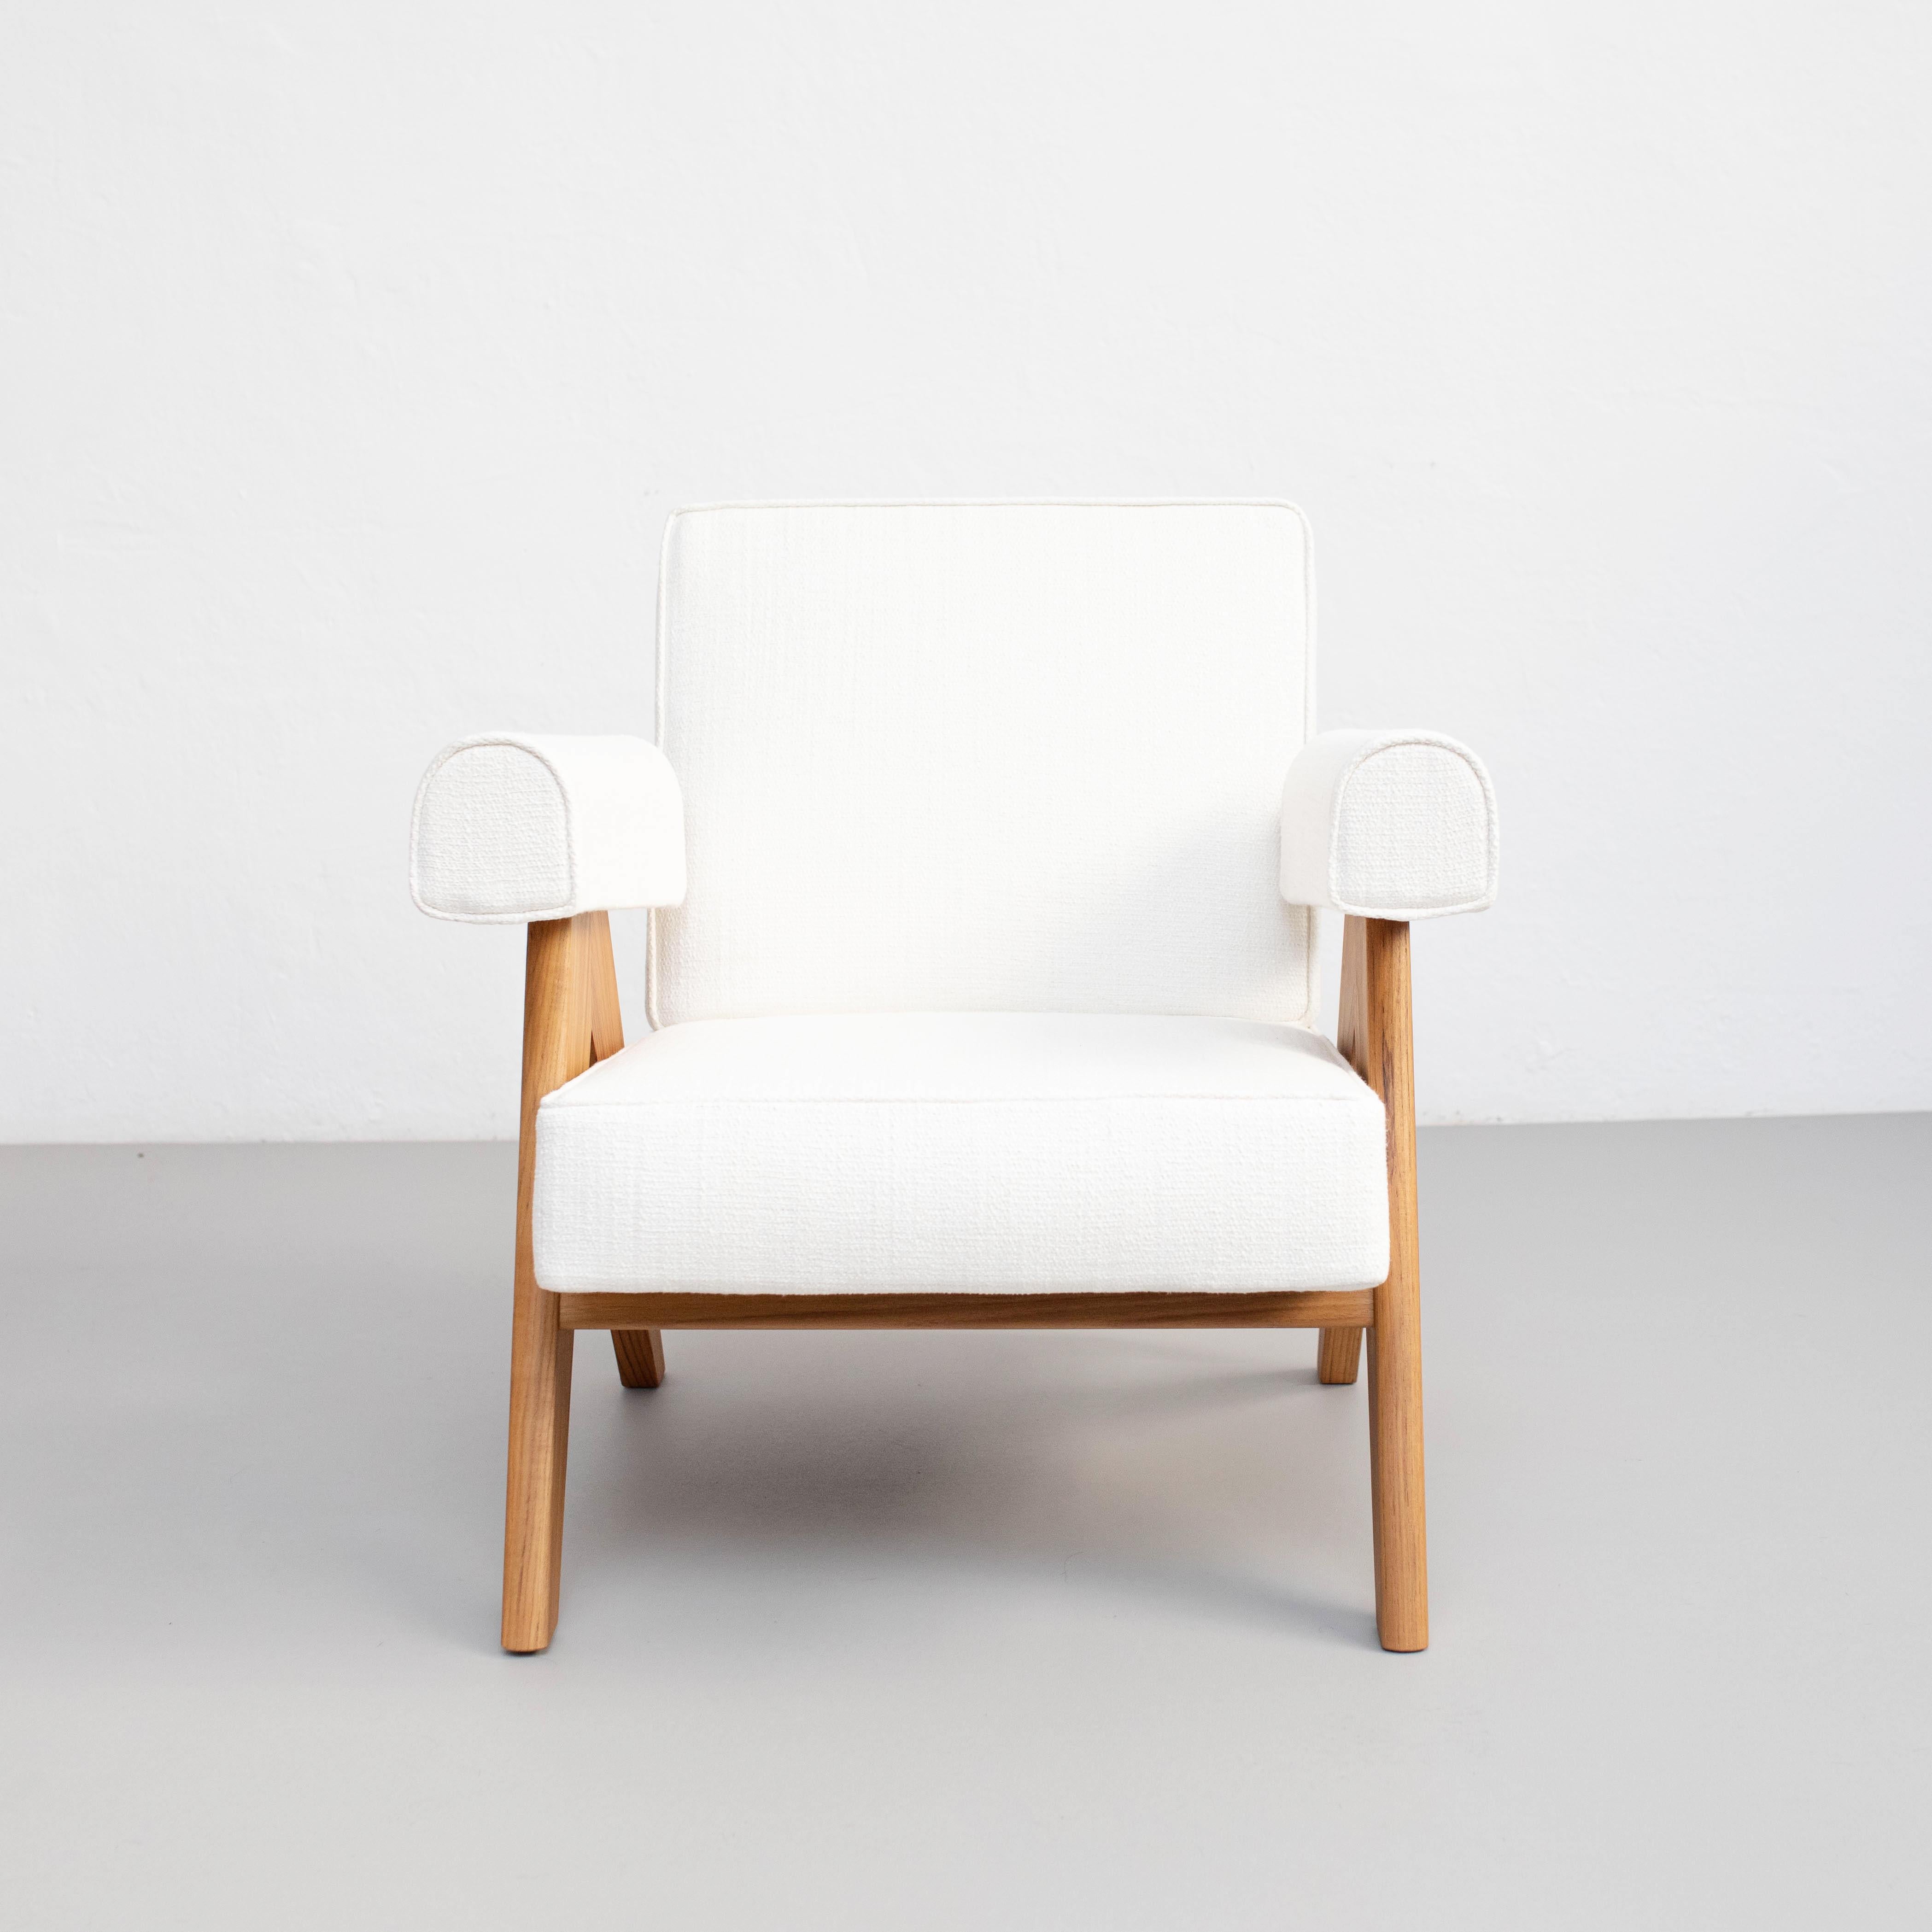 Sessel, entworfen von Pierre Jeanneret um 1950, neu aufgelegt im Jahr 2019.
Hergestellt von Cassina in Italien.

Die außergewöhnliche Architektur des 1951 von Le Corbusier entworfenen Capitol Complex in Chandigarh wurde von der UNESCO in die